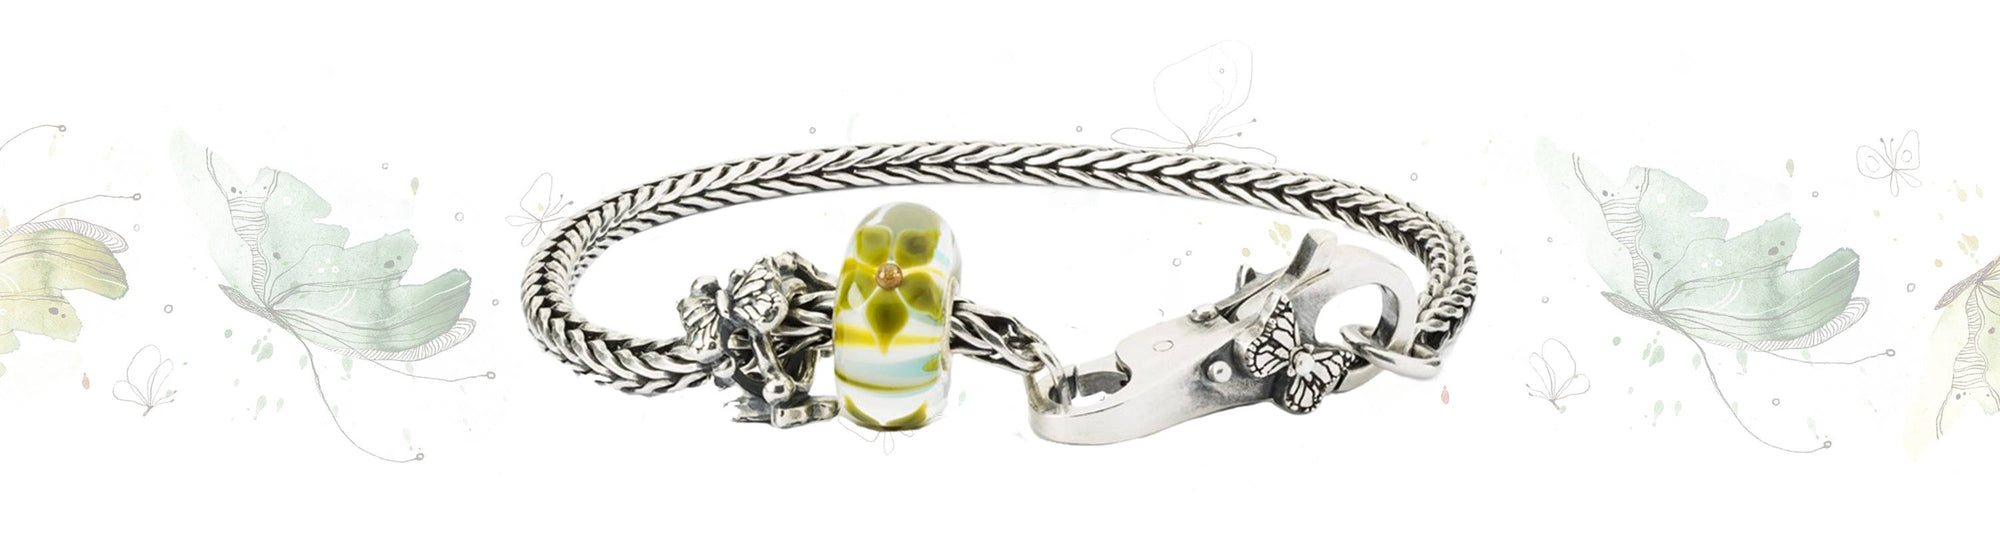 Trollbeads Beauty of Change Designer Bracelet Preview